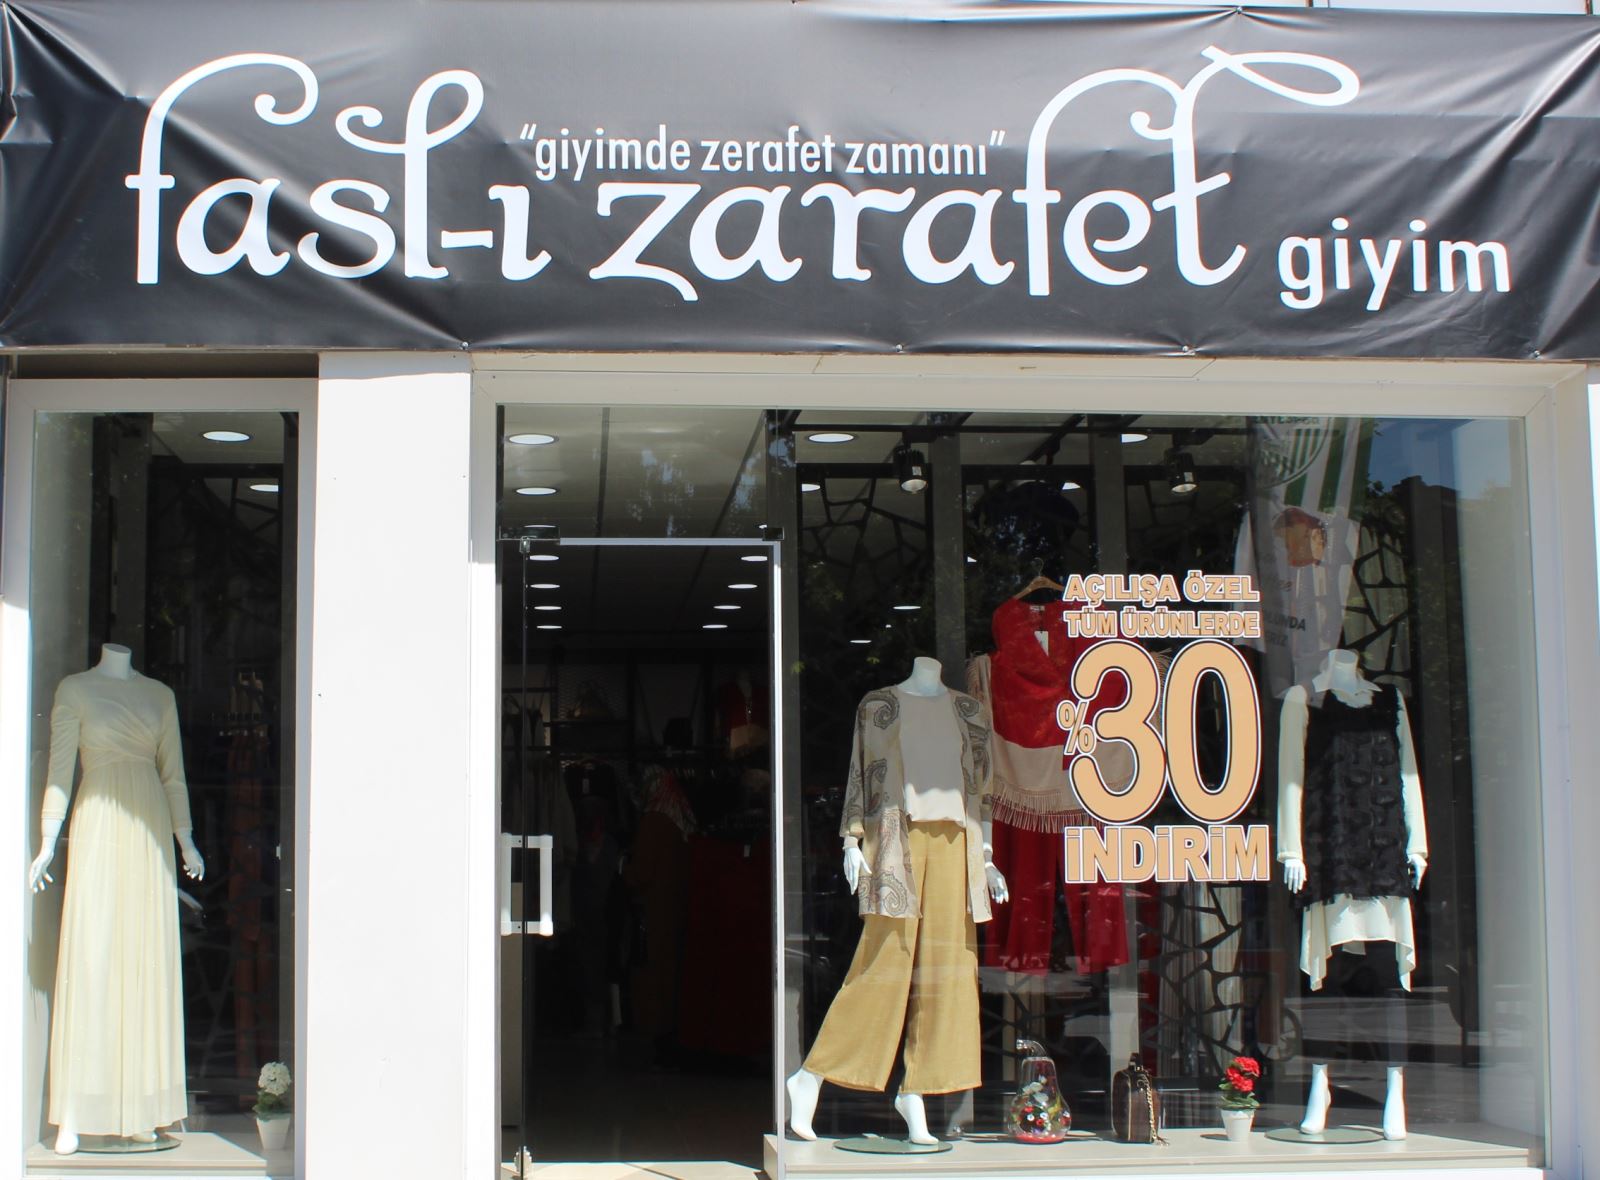 Kırşehir’de Fasl-ı Zarafet Hizmete Açıldı!